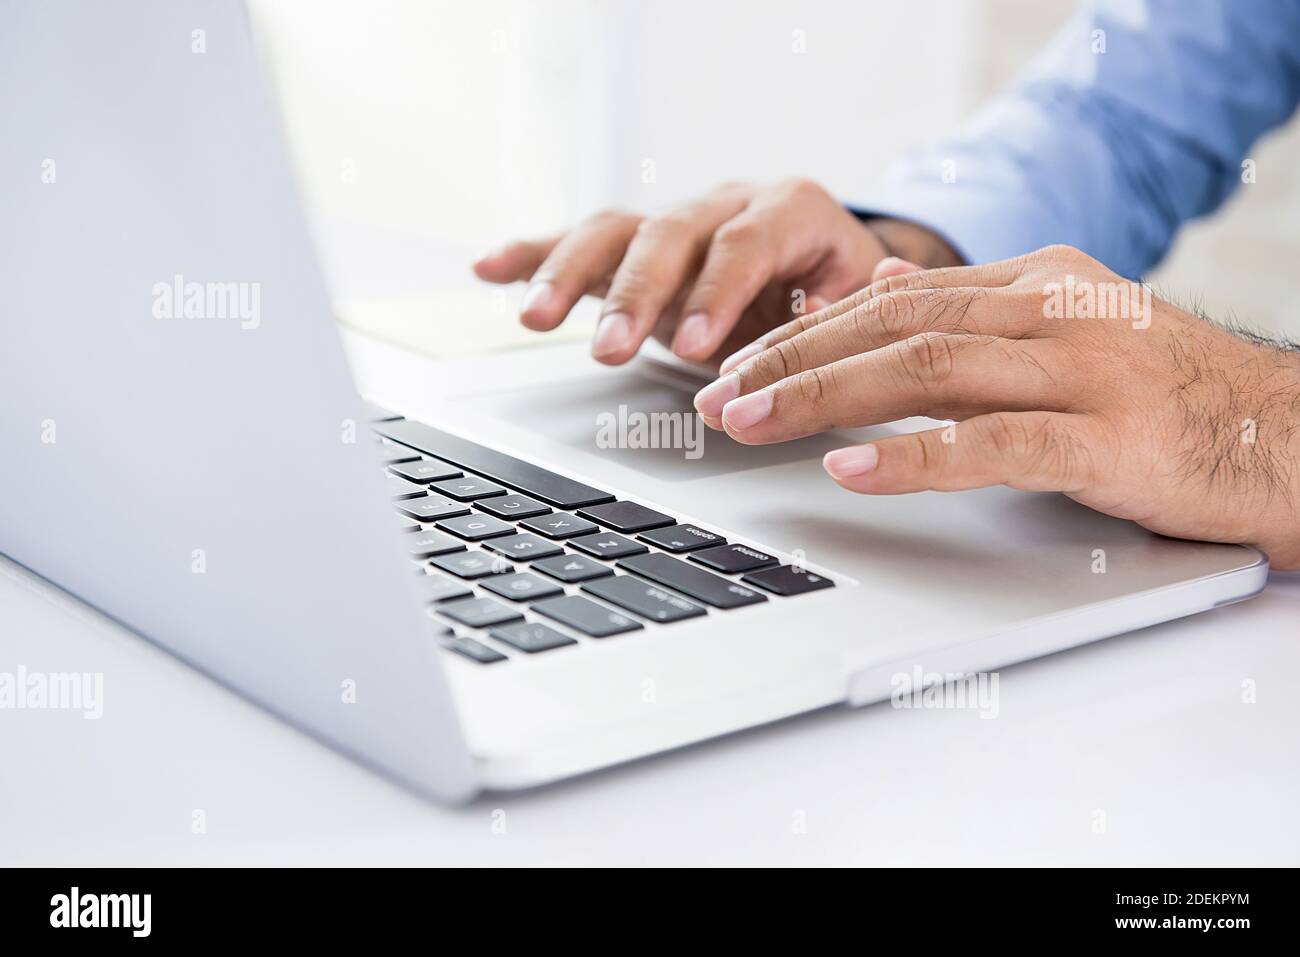 Hombre de negocios que utiliza un ordenador portátil que funciona y busca información sobre la creación de negocios en línea en internet en la oficina Foto de stock